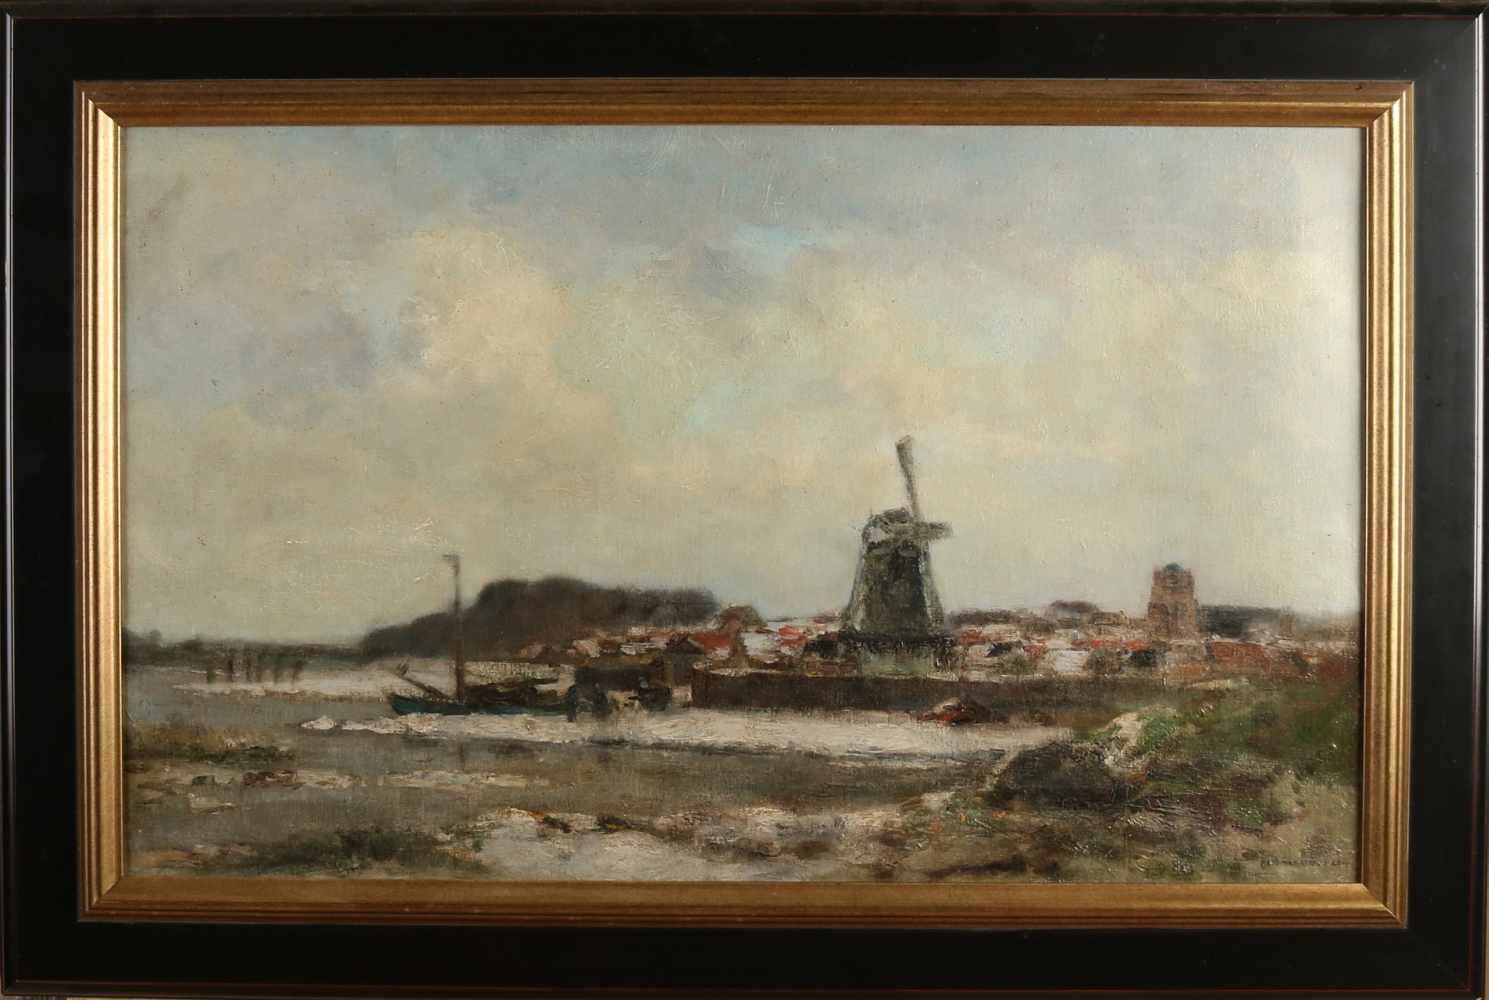 David Schulman. 1881 - 1966. Niederländische Winterszene mit Boot, Dorf und Windmühle. Öl auf